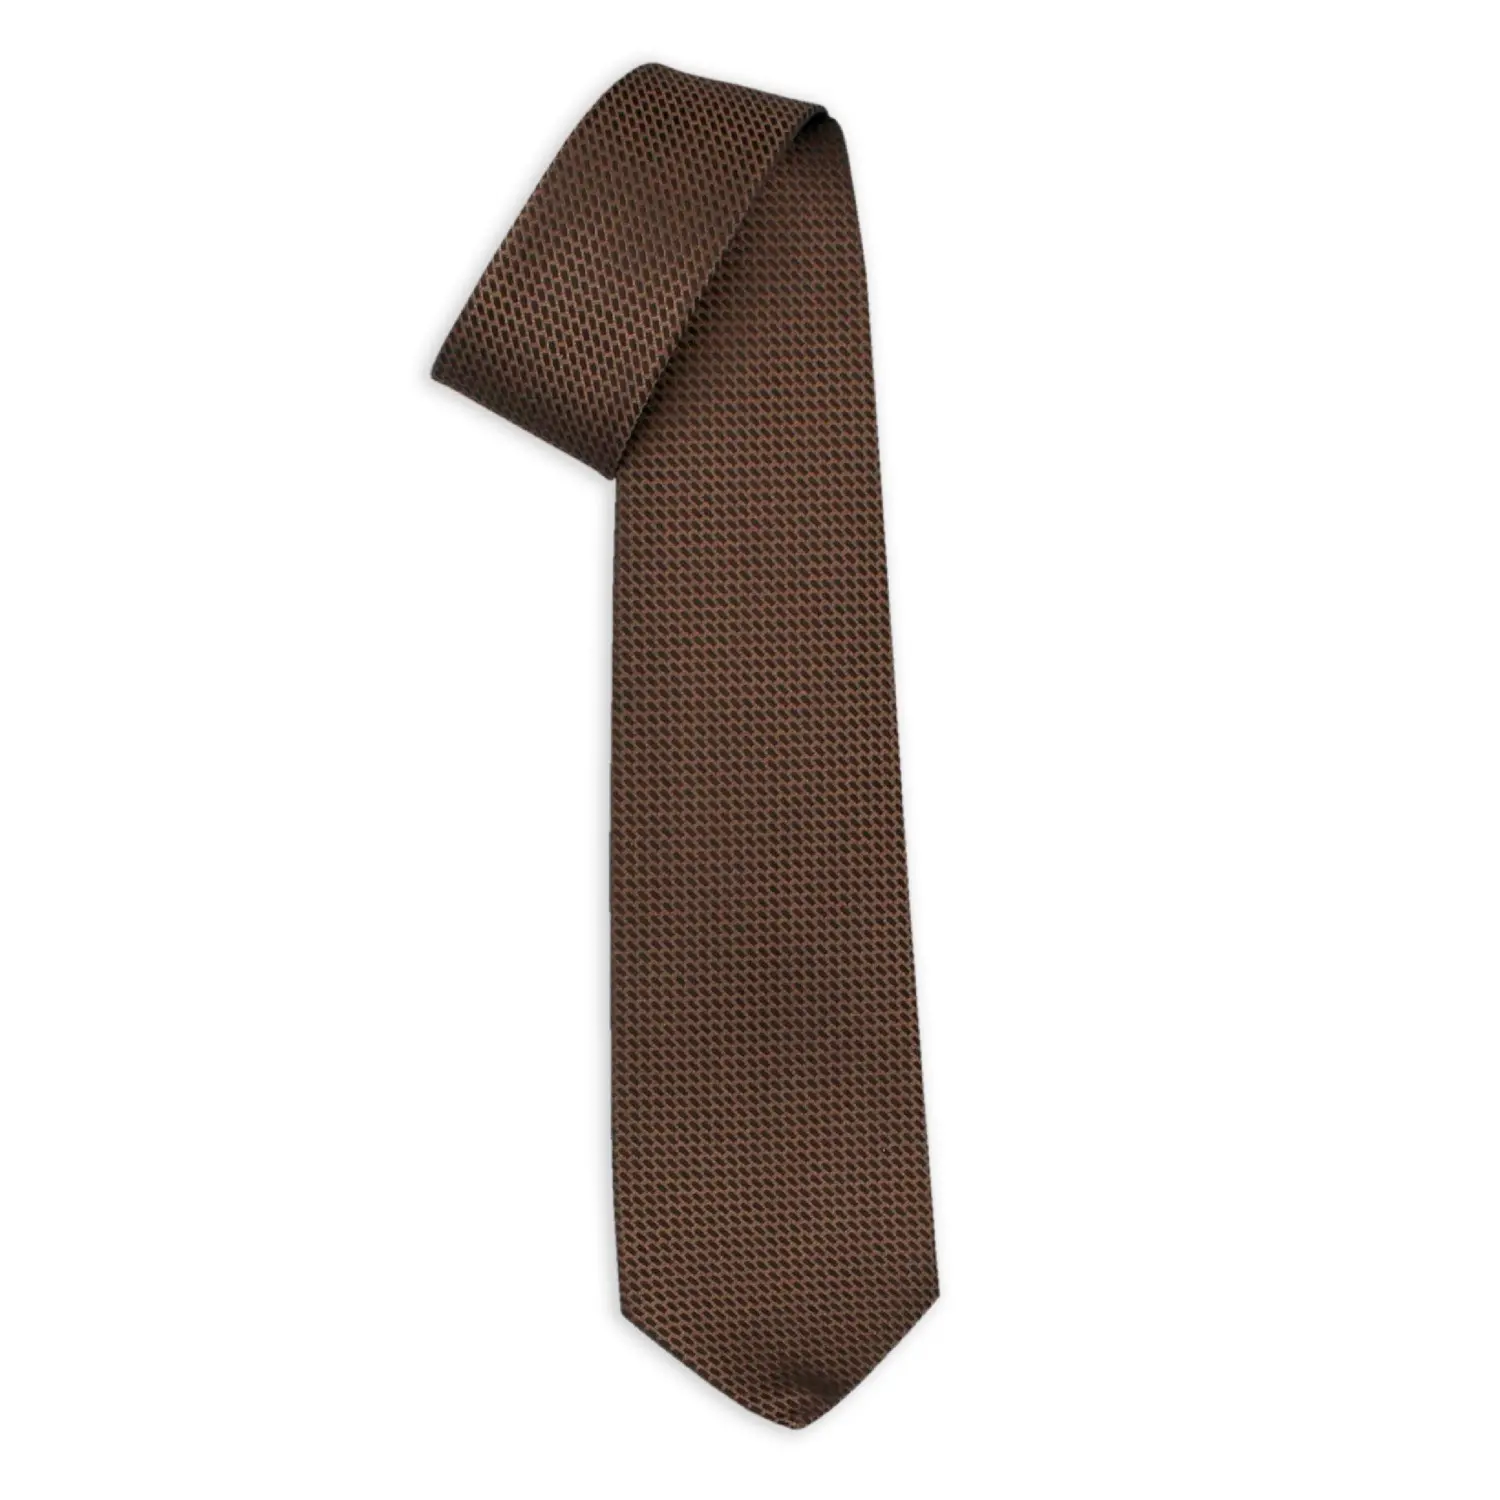 Cravatte di seta italiane con disegni Jacquard-cravatta a sette pieghe fatta a mano Roma Brown-mostra il tuo stile distintivo